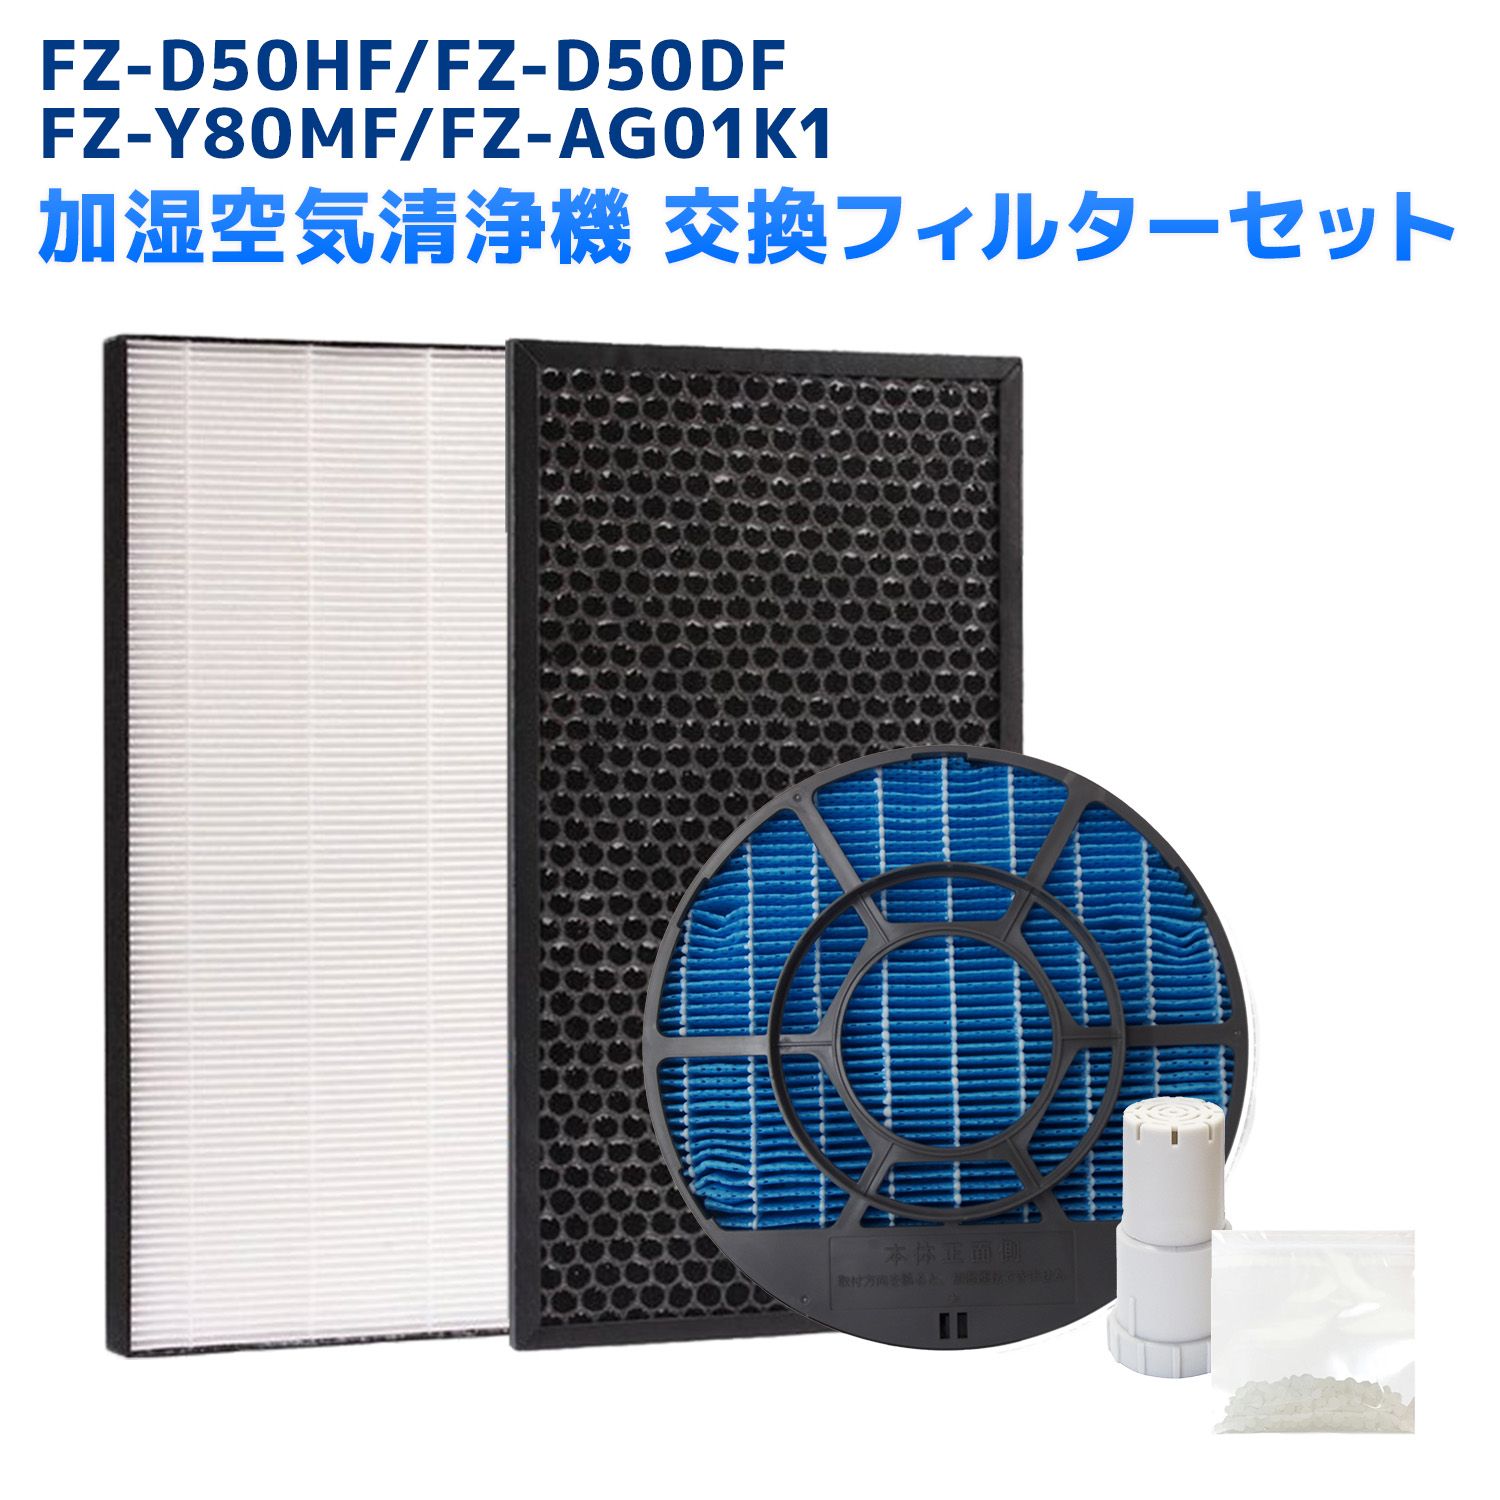 シャープ対応  5点セット FZ-D50HF FZ-D50DF FZ-Y80MF FZ-AG01K1 集じんフィルター fz d50hf 脱臭フィルター FZD50DF FZ-F50DF  加湿フィルター(枠付き2802140115)  FZY80MF イオンカートリッジ  加湿空気清浄機対応 互換 交換用 非純正 ★